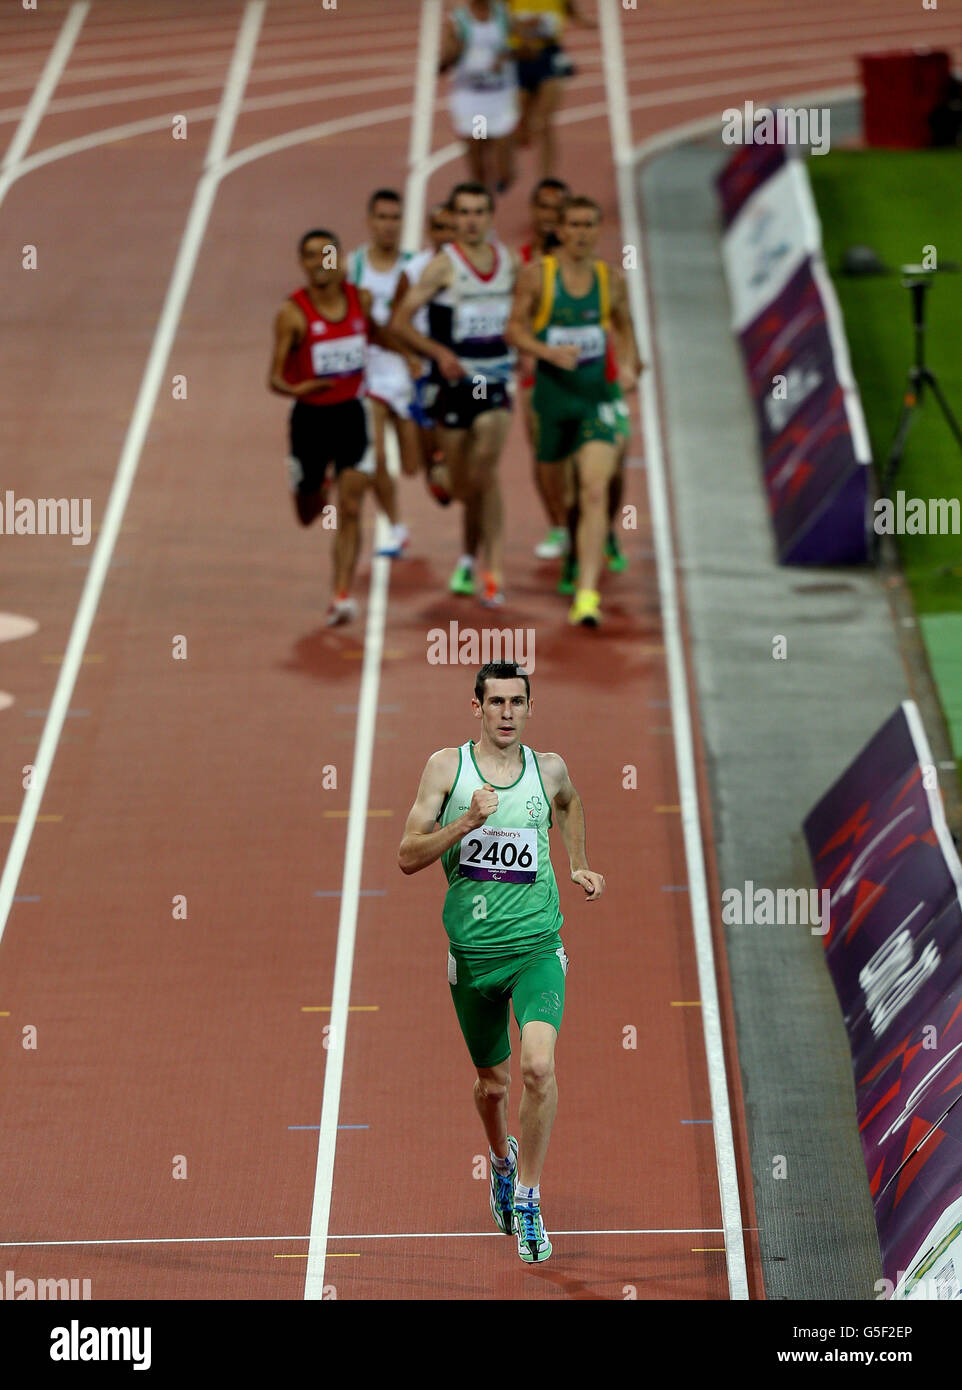 Paralympische Spiele In London - Tag 5. Der irische Michael McKillop in Aktion auf seinem Weg zum Sieg beim 1500-m-Rennen der T37-Kategorie der Männer im Olympiastadion. Stockfoto